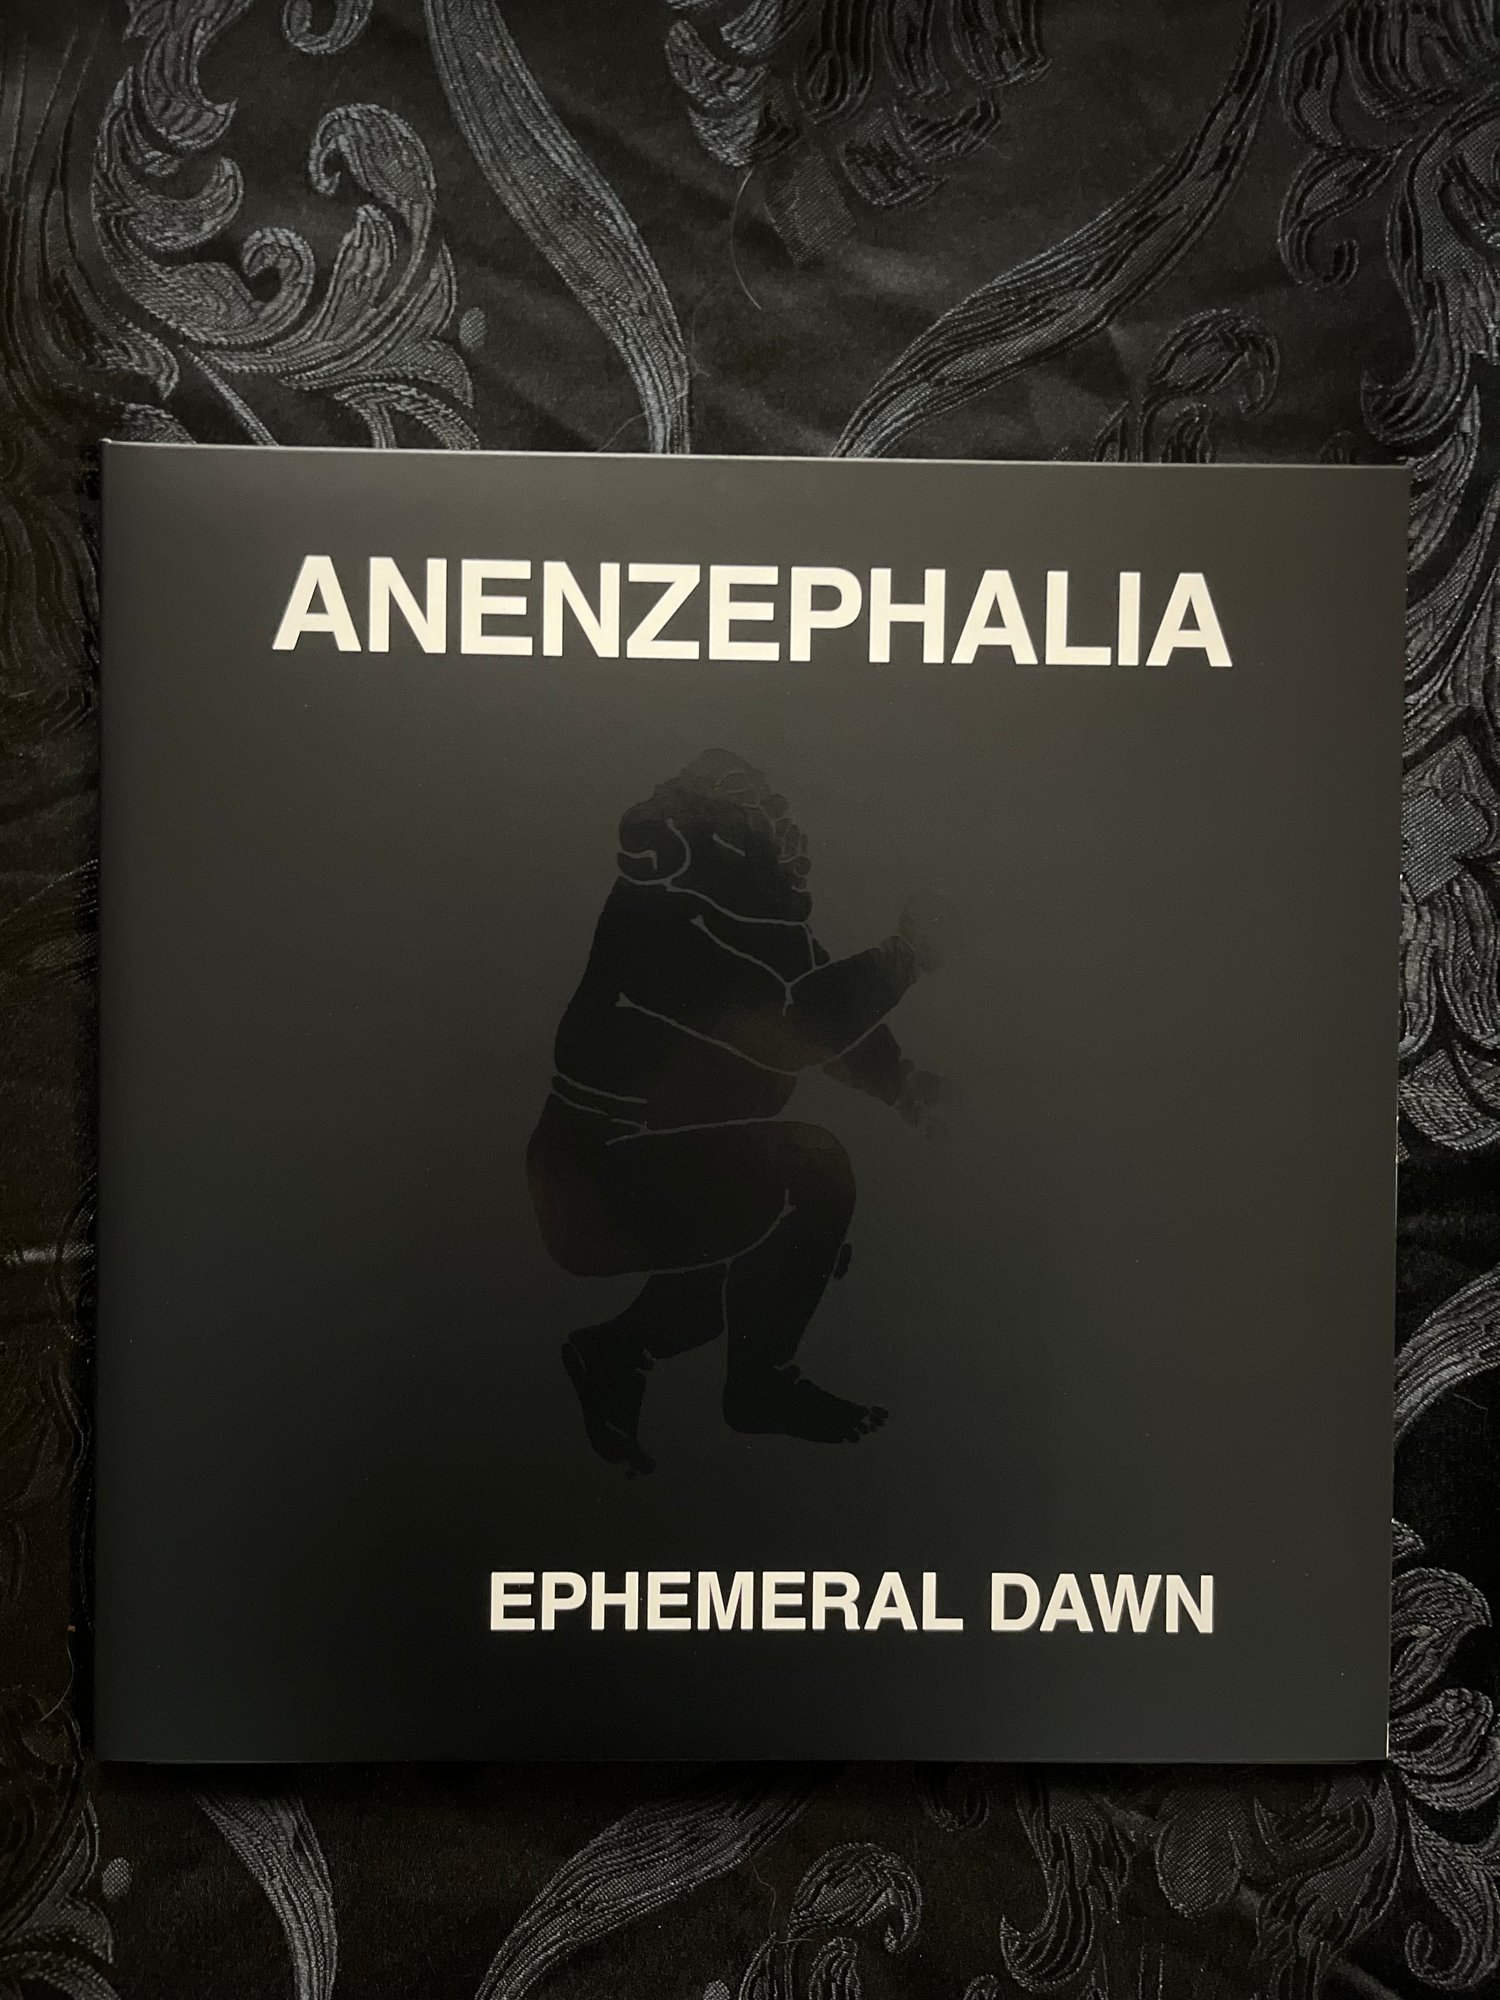 Anenzephalia - Ephemeral Dawn 2xLP Black or White Vinyl (Tesco)